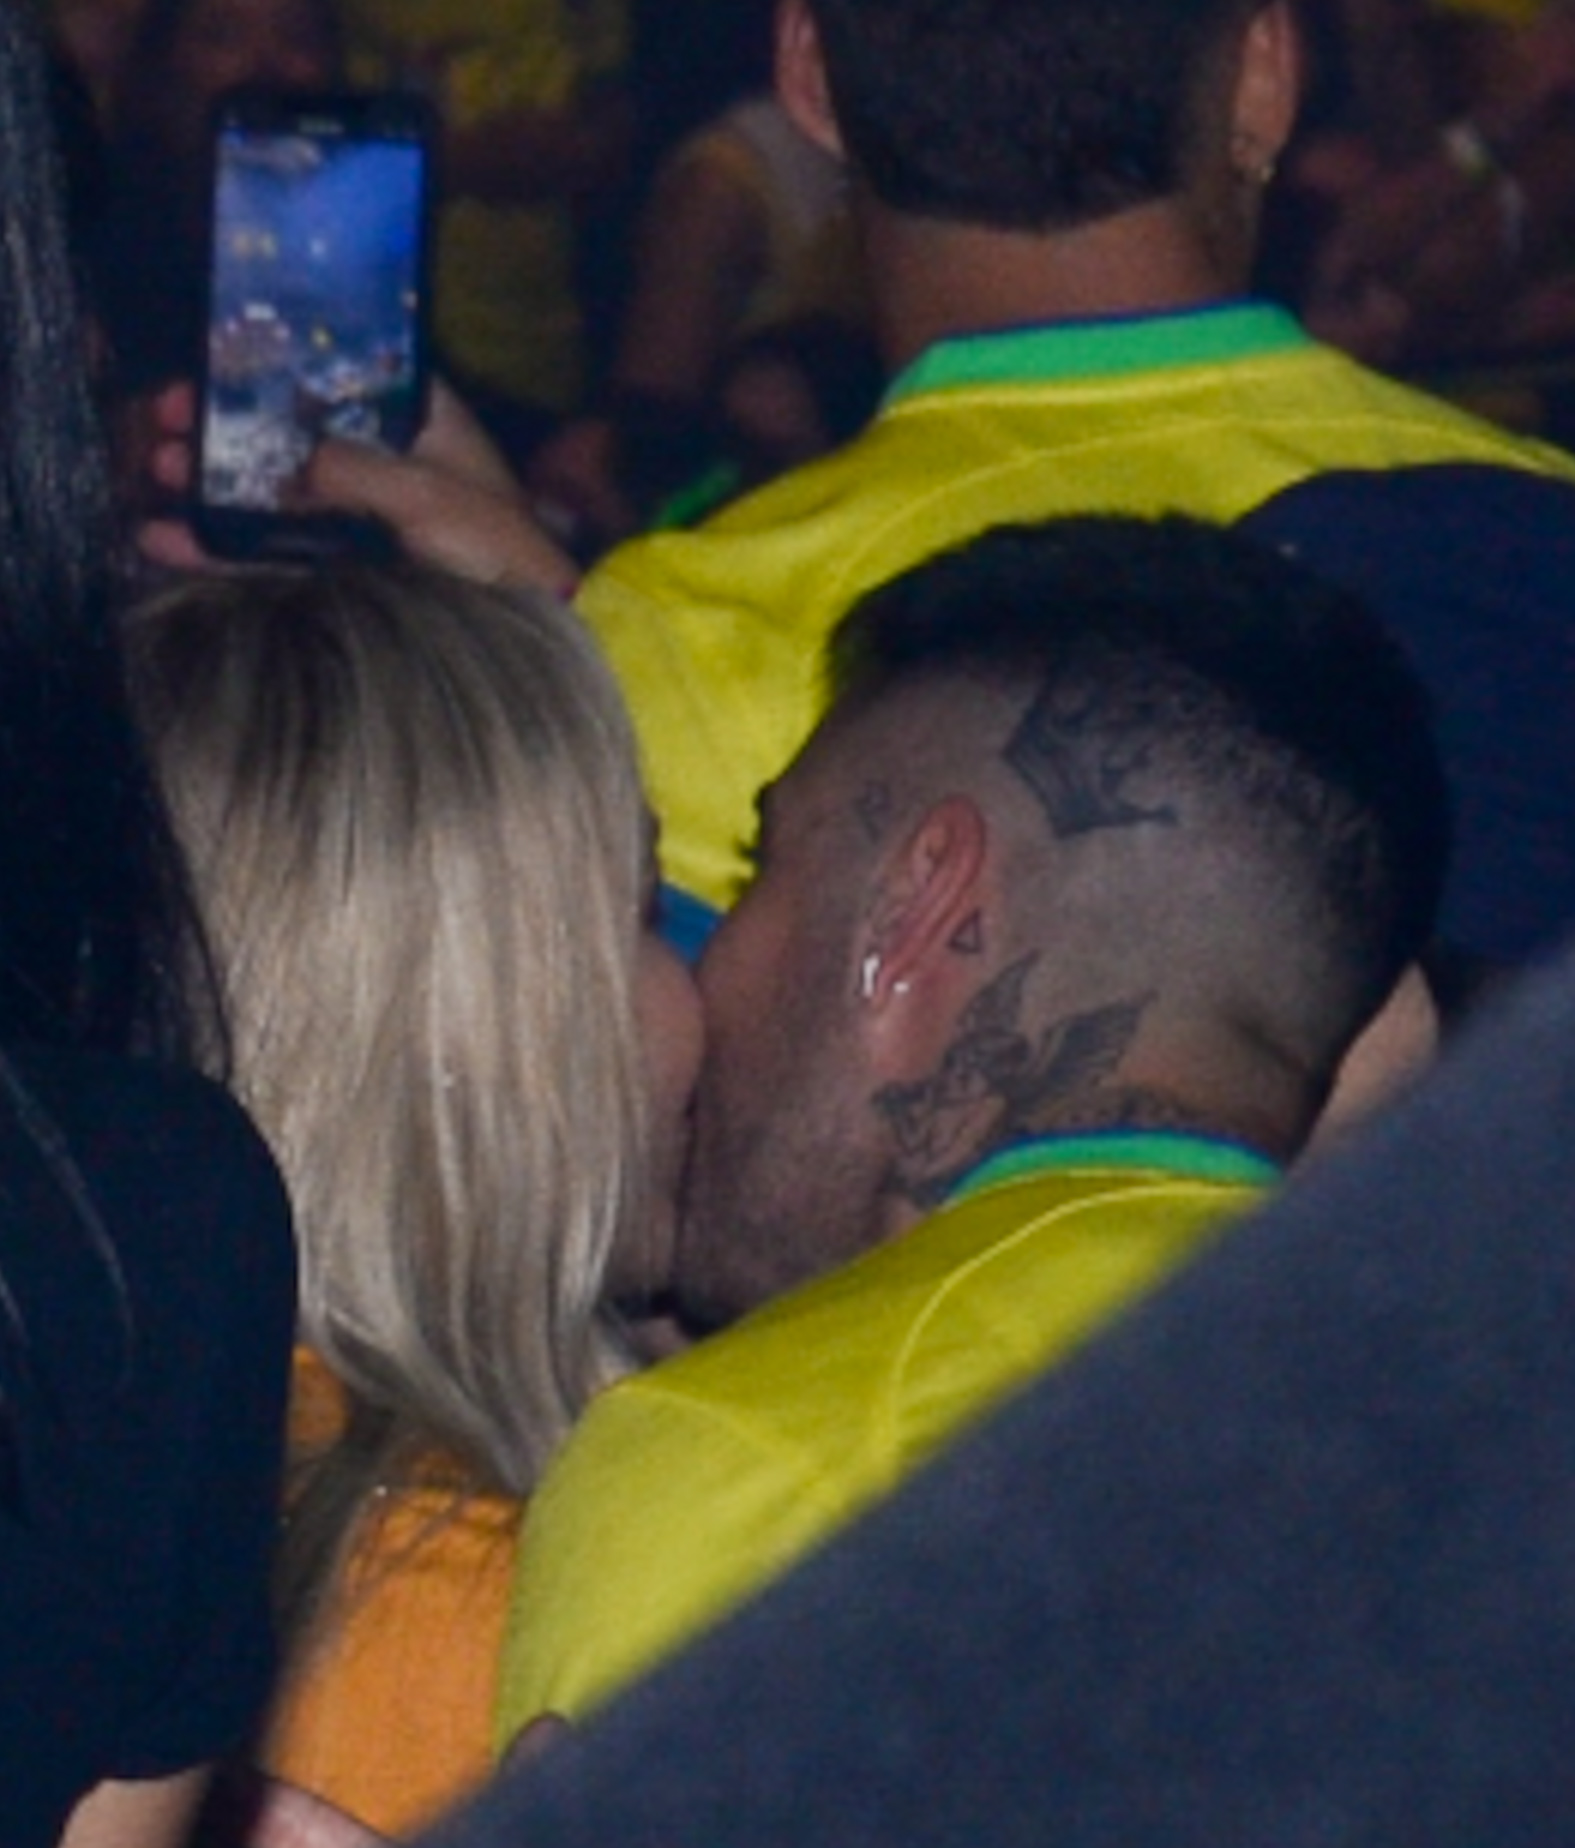 Gui Araújo e Karoline Lima sorridente equanto trocam um beijo no cantinho da boca. Ambos aparecem com camisas amarelas da seleção brasileira